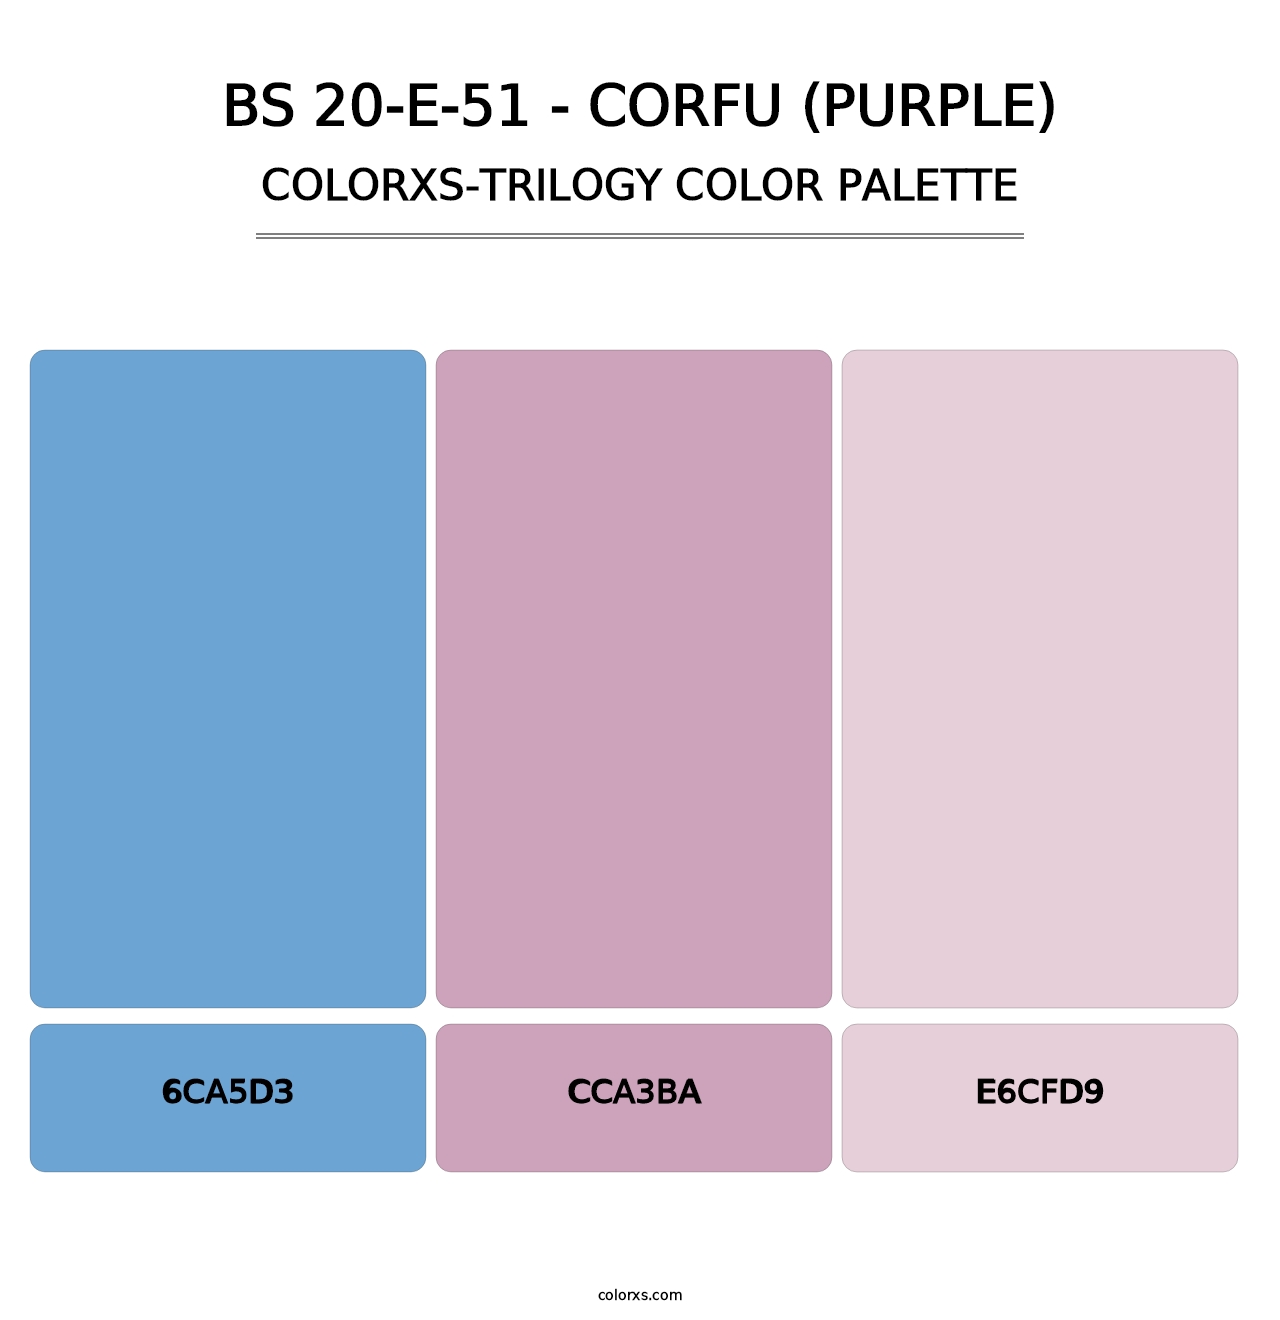 BS 20-E-51 - Corfu (Purple) - Colorxs Trilogy Palette